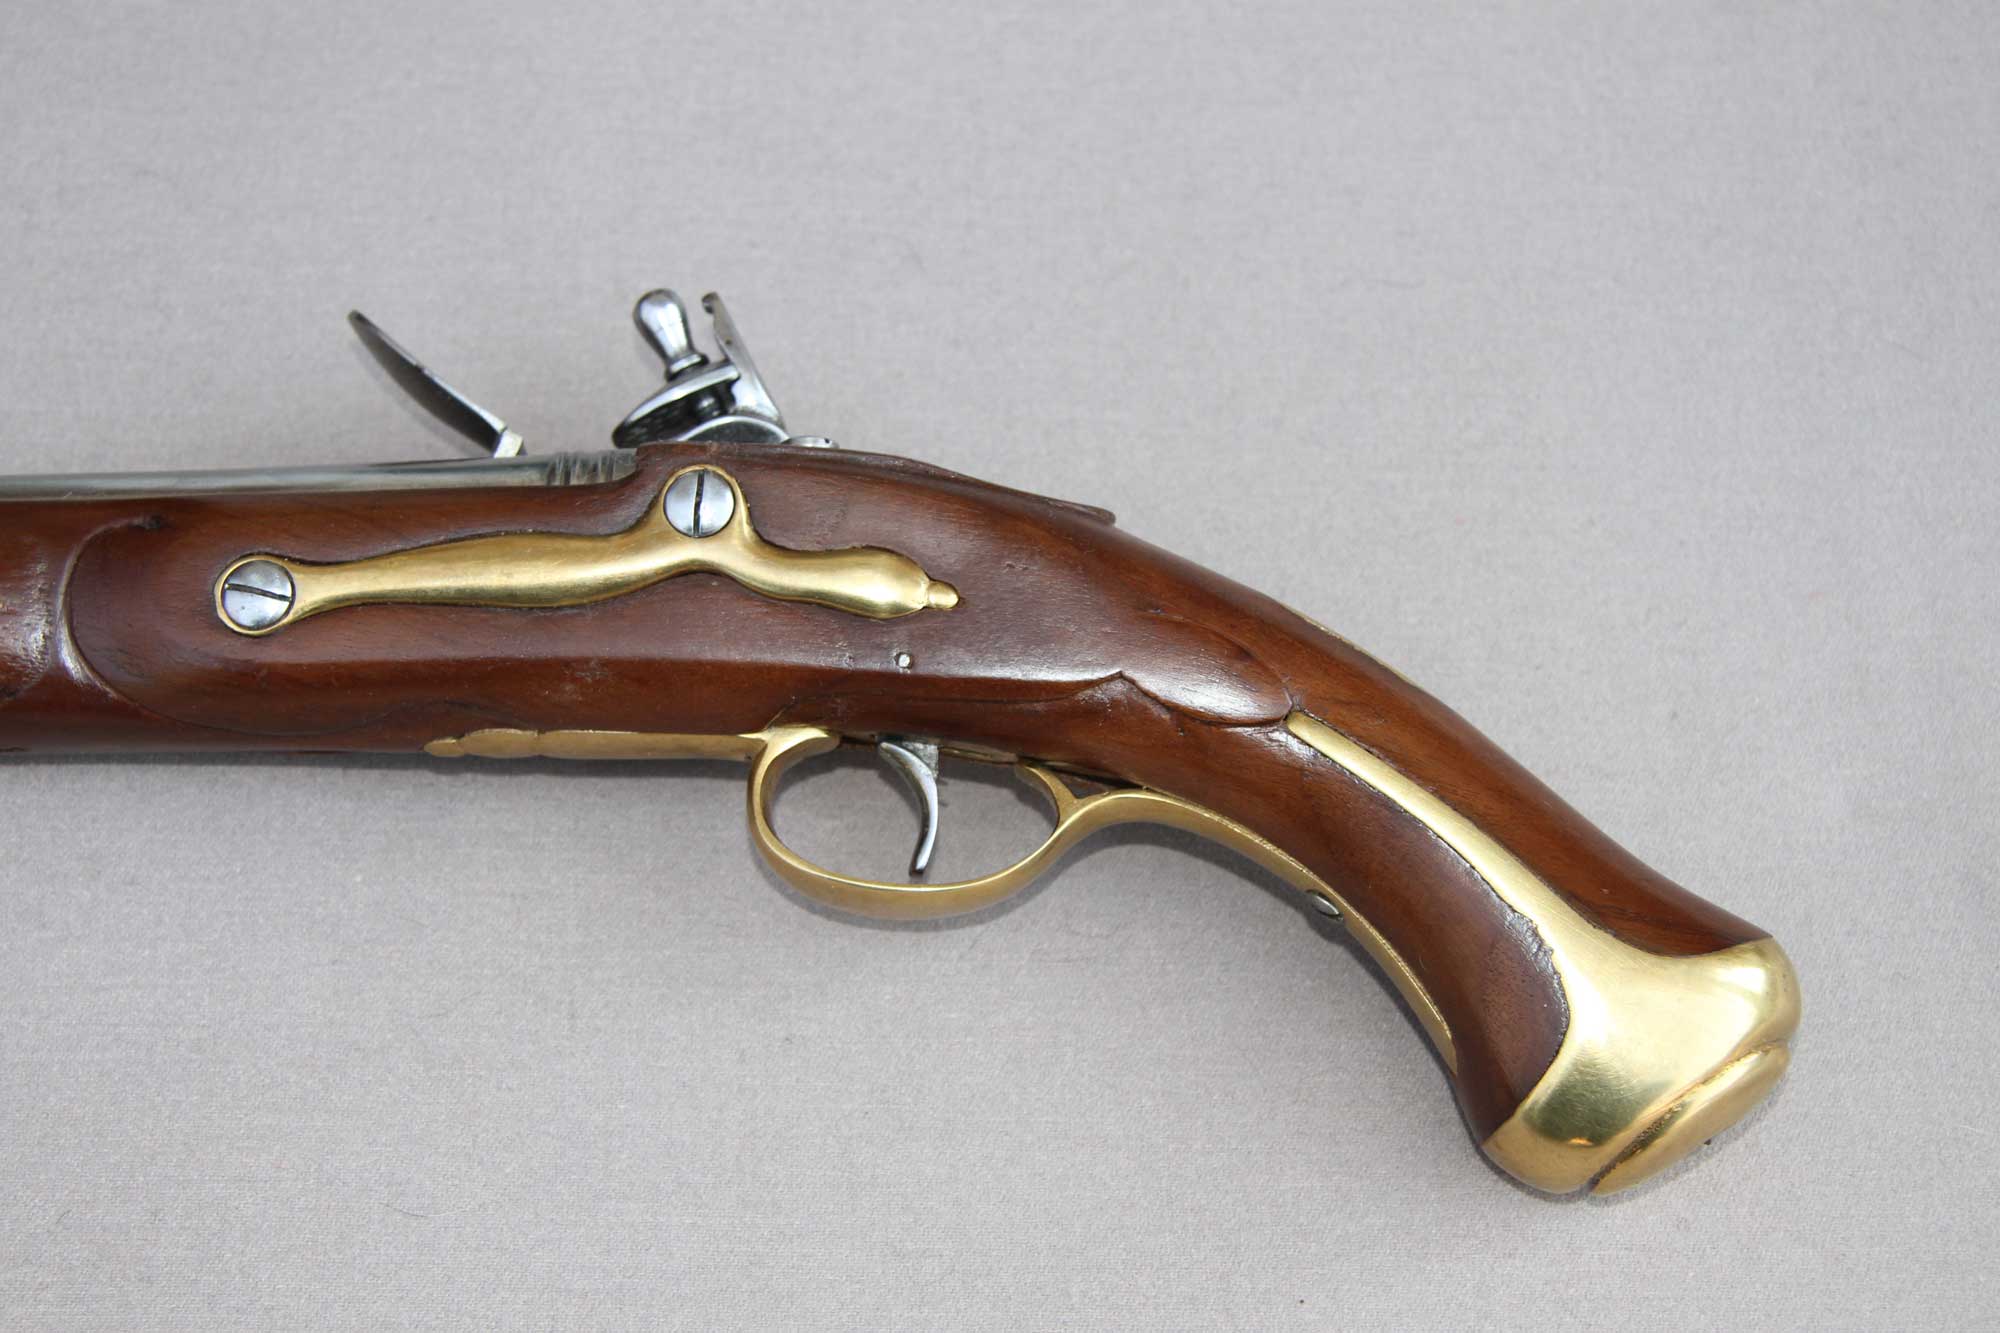 British, Dragoon pistol